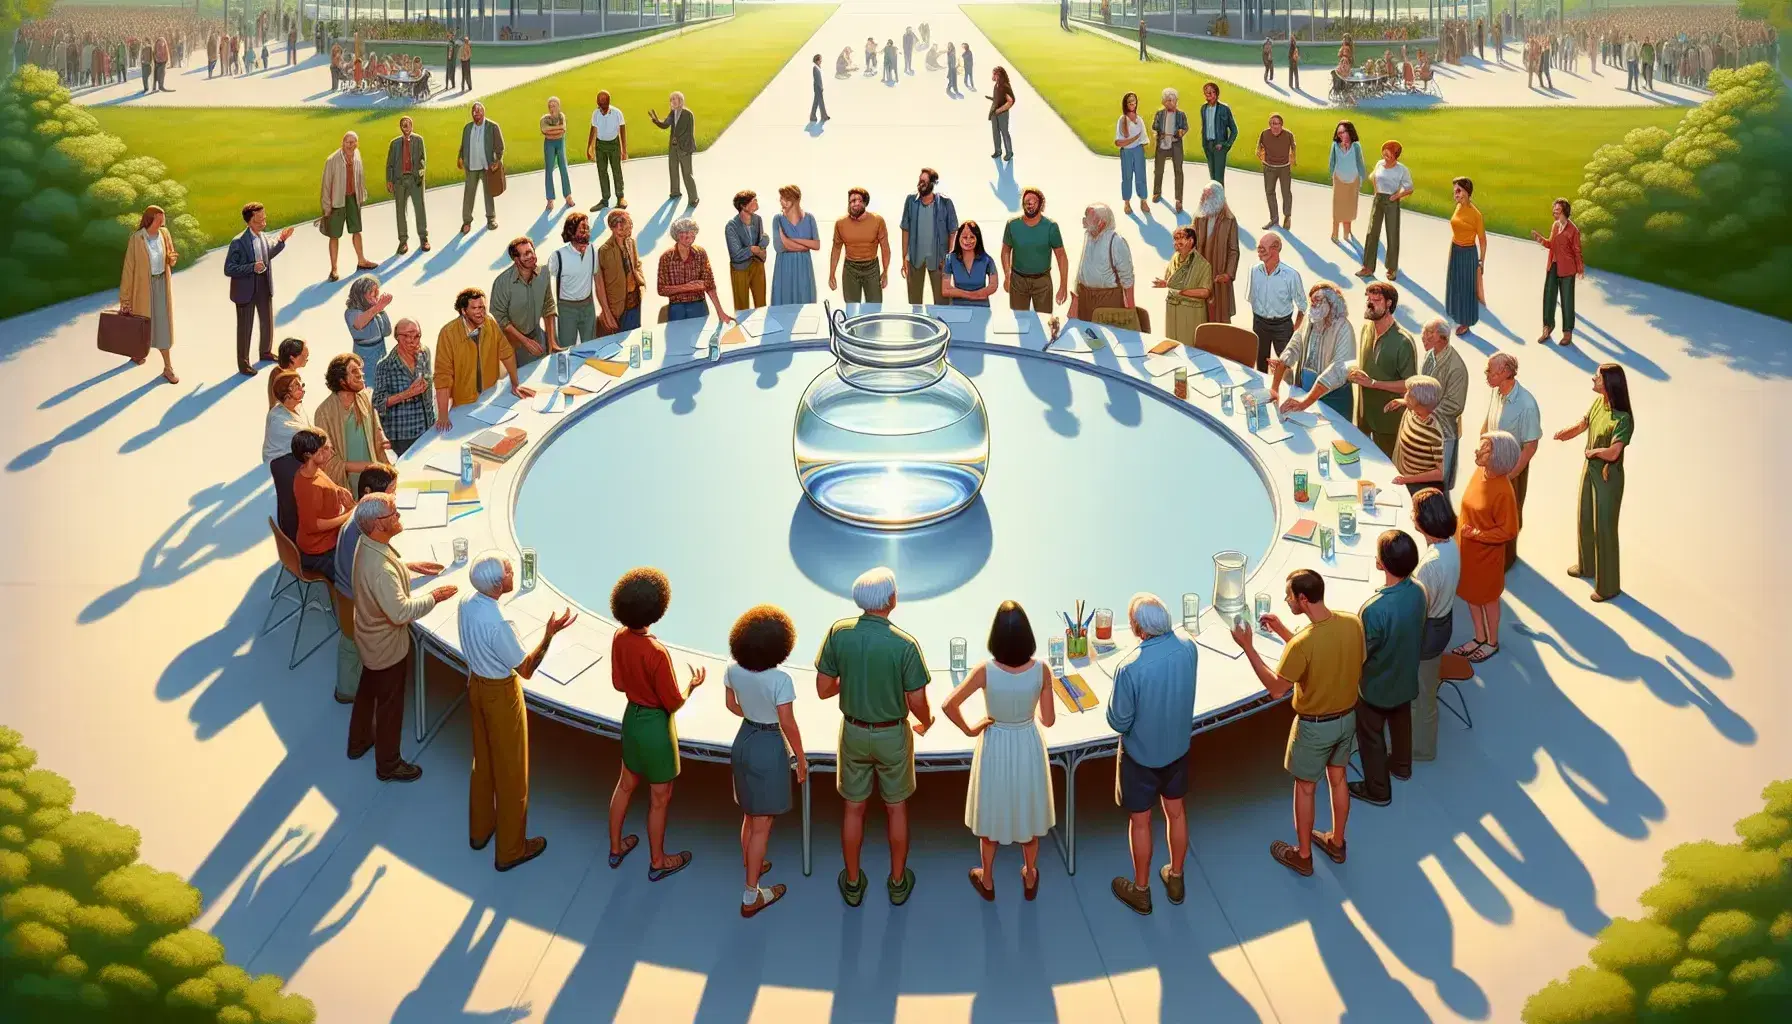 Grupo diverso de personas en animada reunión al aire libre, discutiendo documentos en una mesa redonda con jarra de agua y vasos, en un entorno verde y soleado.